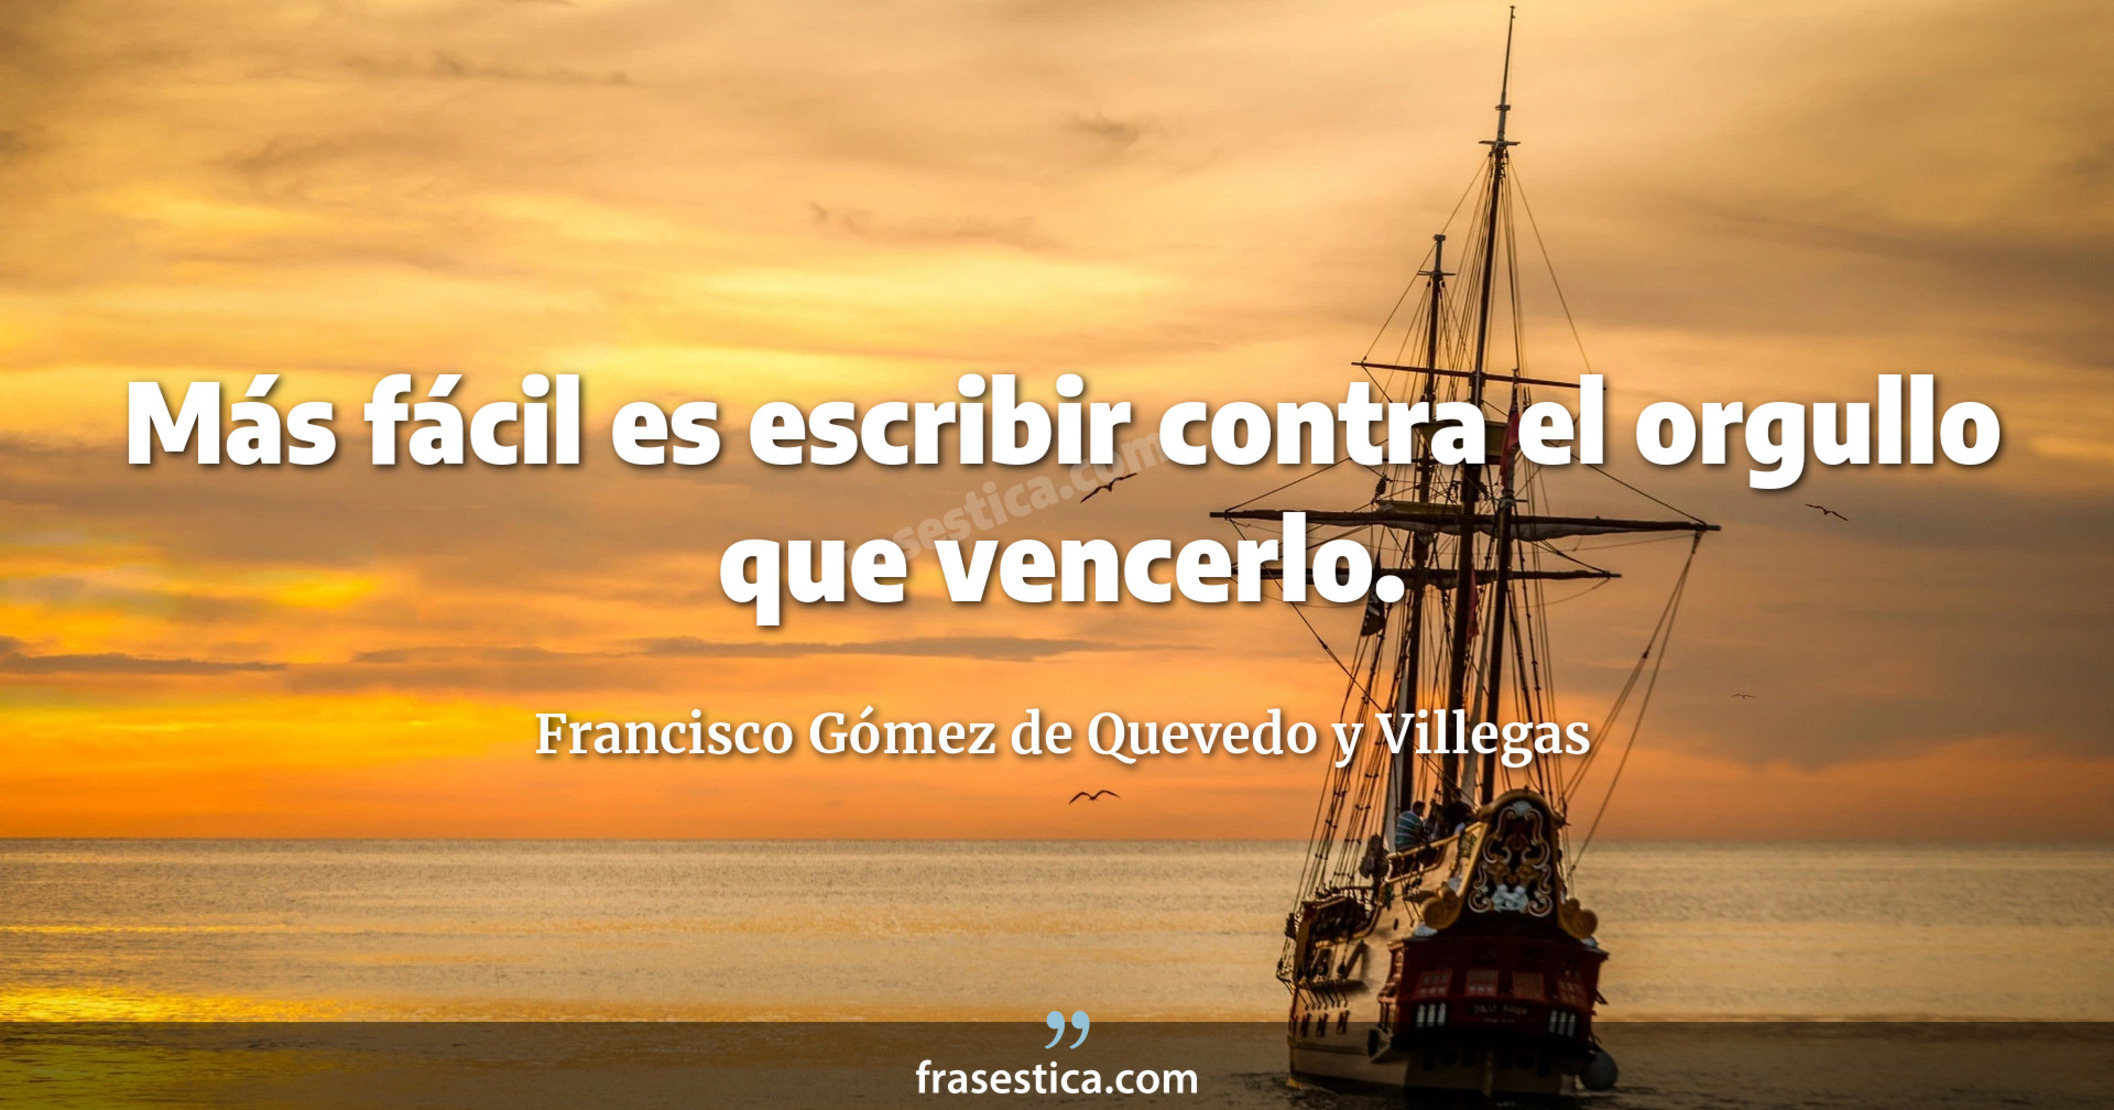 Más fácil es escribir contra el orgullo que vencerlo. - Francisco Gómez de Quevedo y Villegas